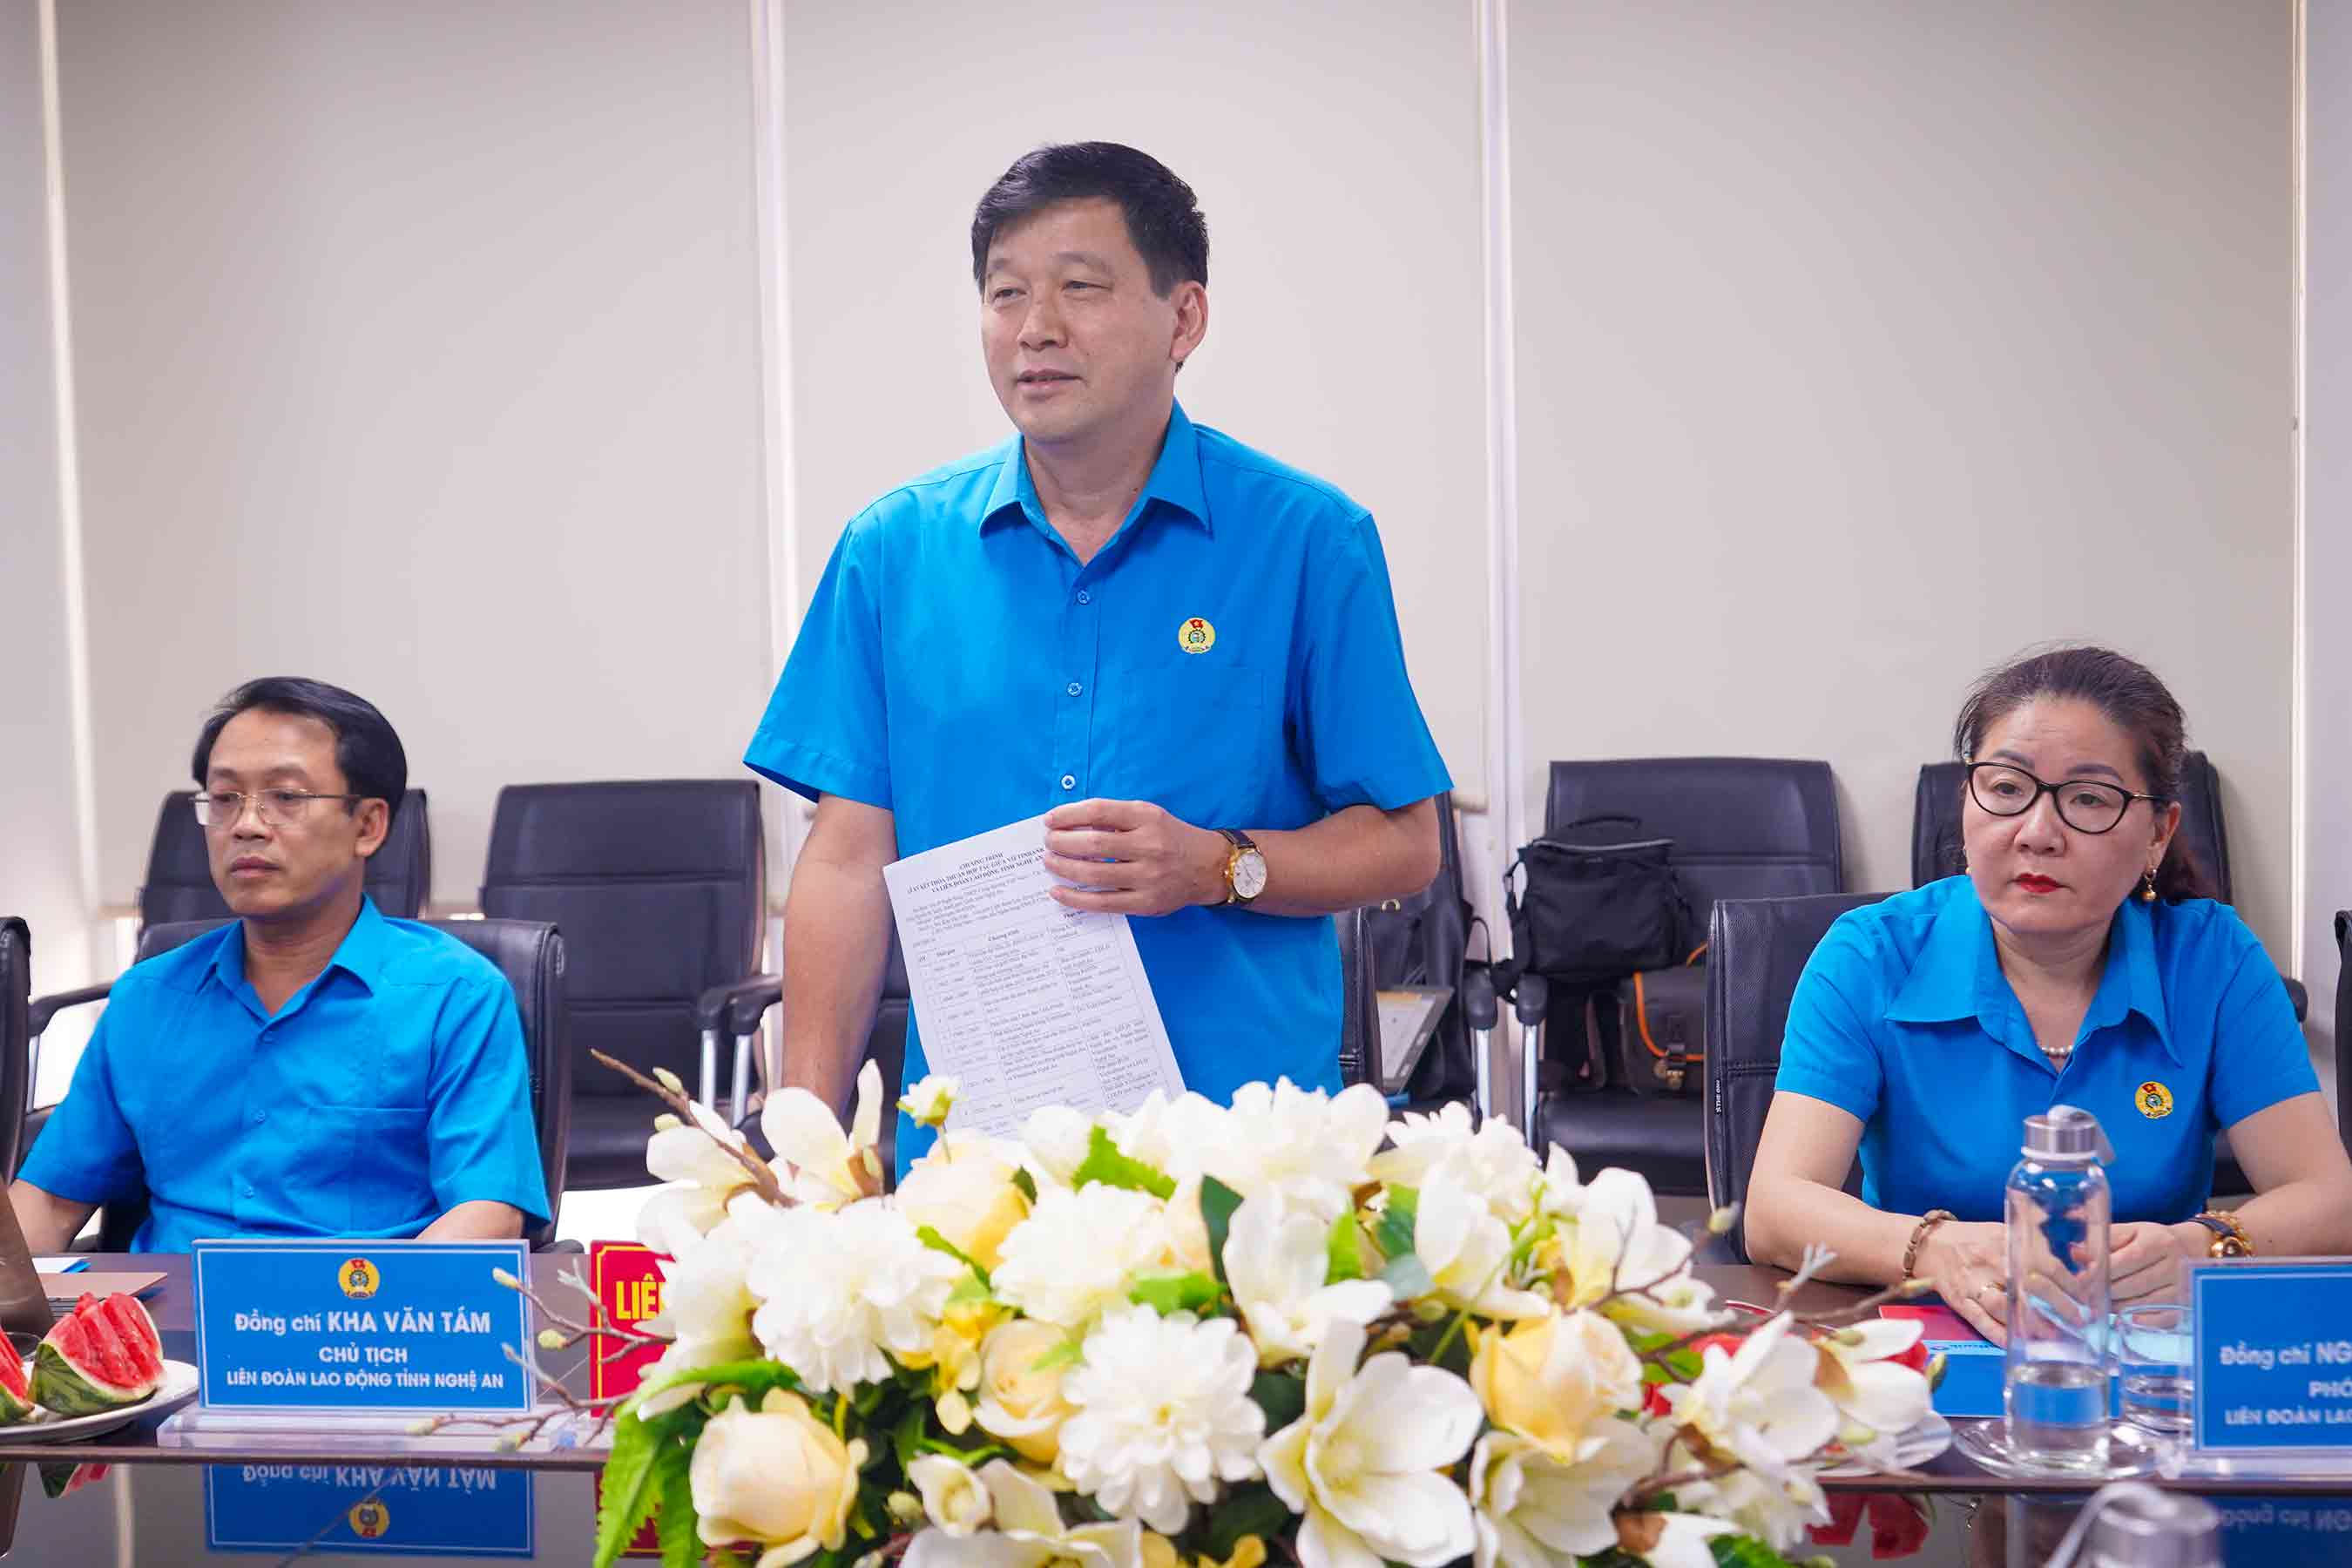 Ông Kha Văn Tám  - Chủ tịch Liên đoàn Lao động tỉnh Nghệ An phát biểu tại chương trình. Ảnh: Duy Chương.